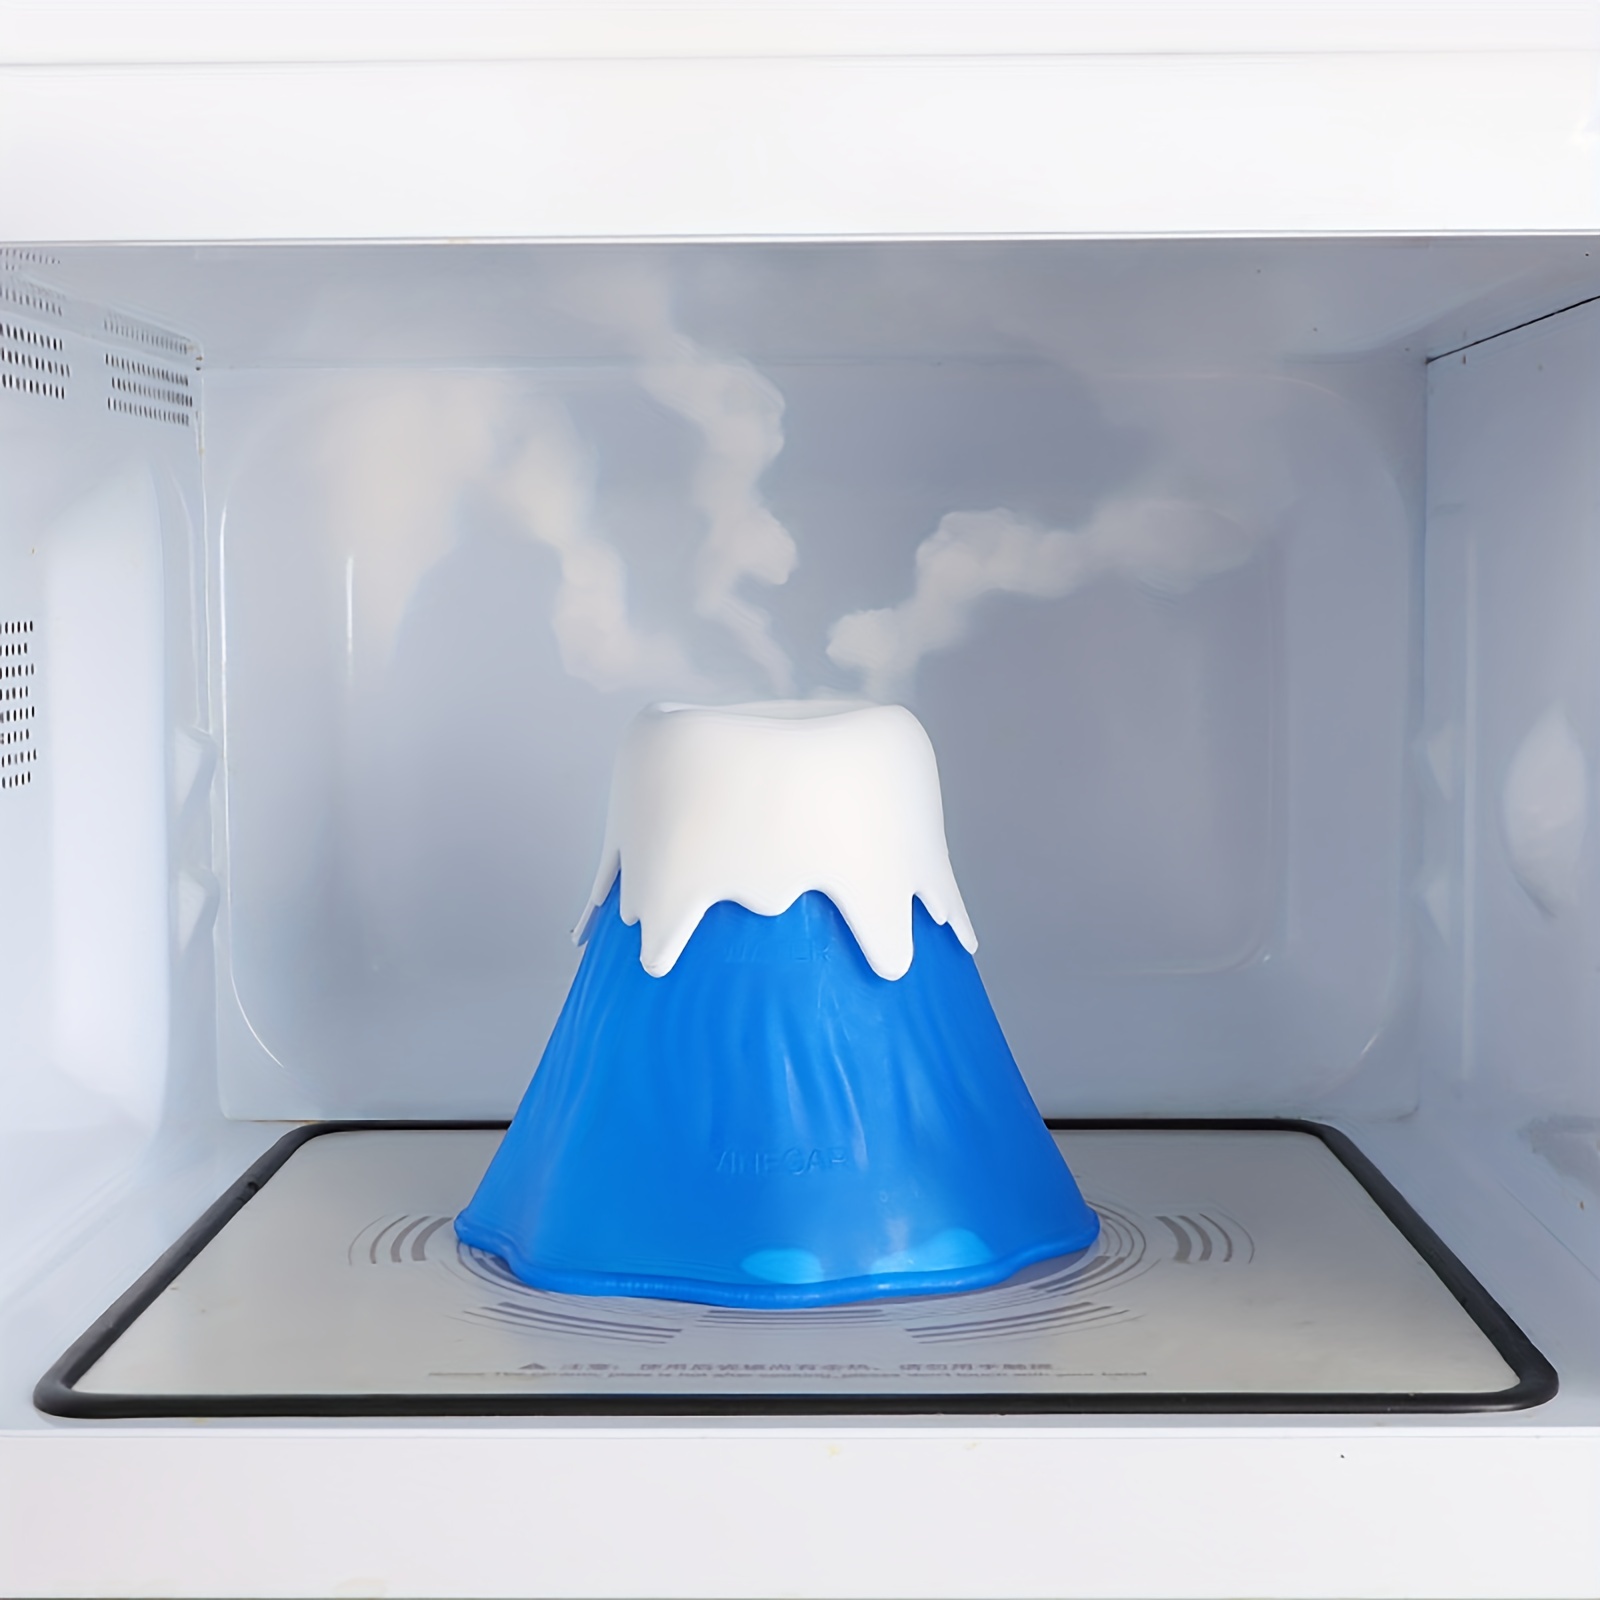 Volcano Erupt Microwave Oven Cleaner Steam Clean Kitchen Gadget